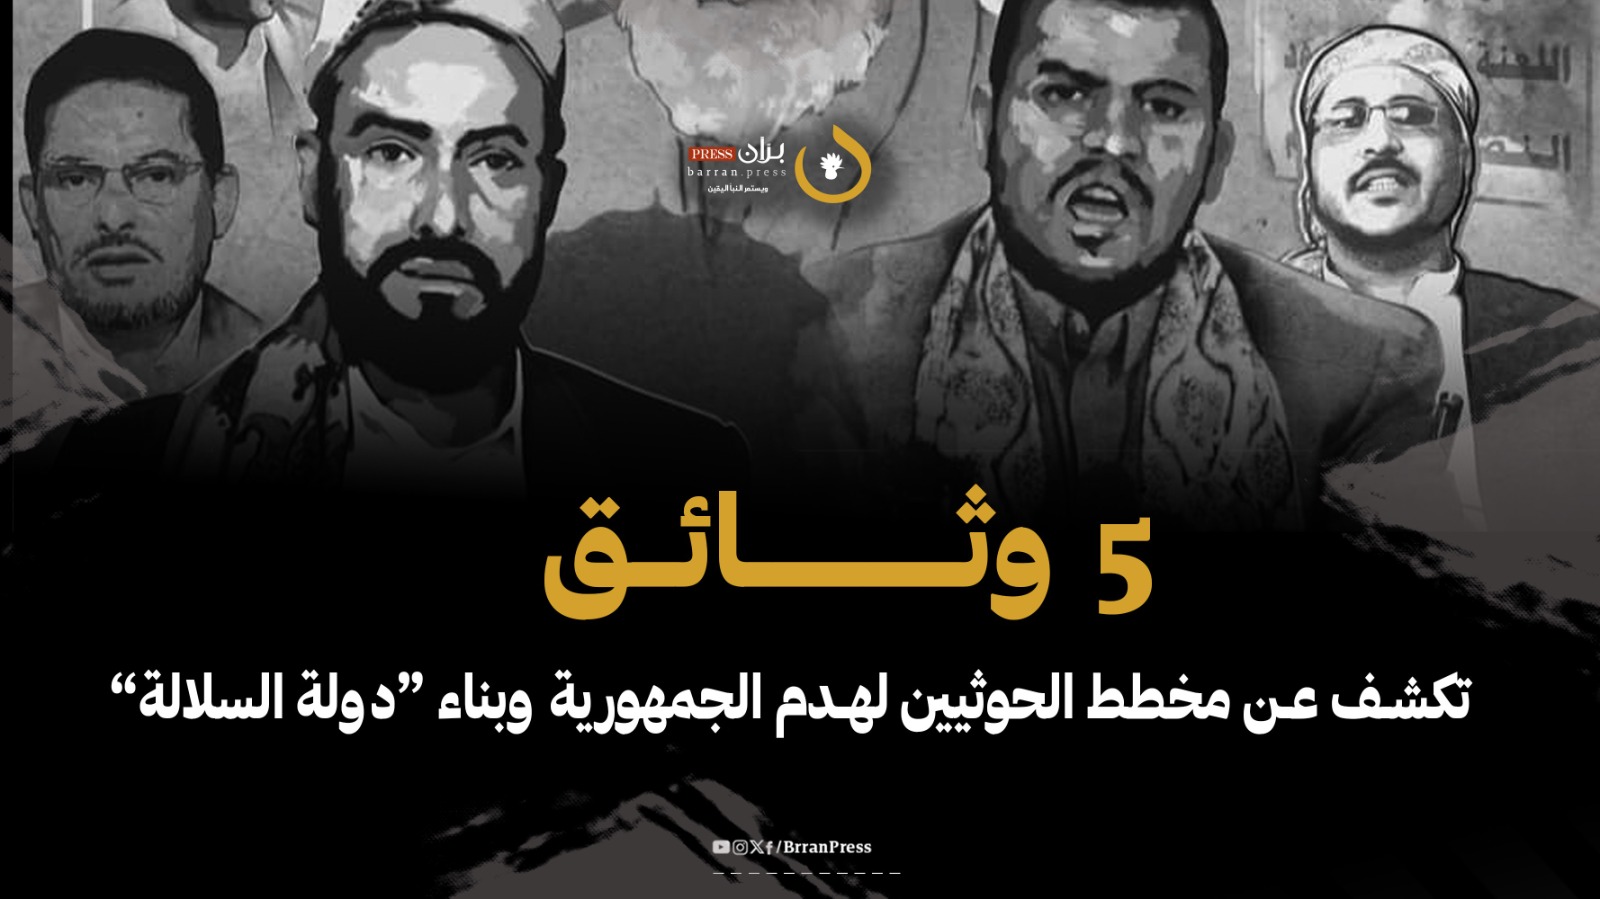 مشروع الحوثيين في إحياء الإمامة وتغيير الهوية قراءة سياسية في 5 وثائق حوثية (حلقة 5)